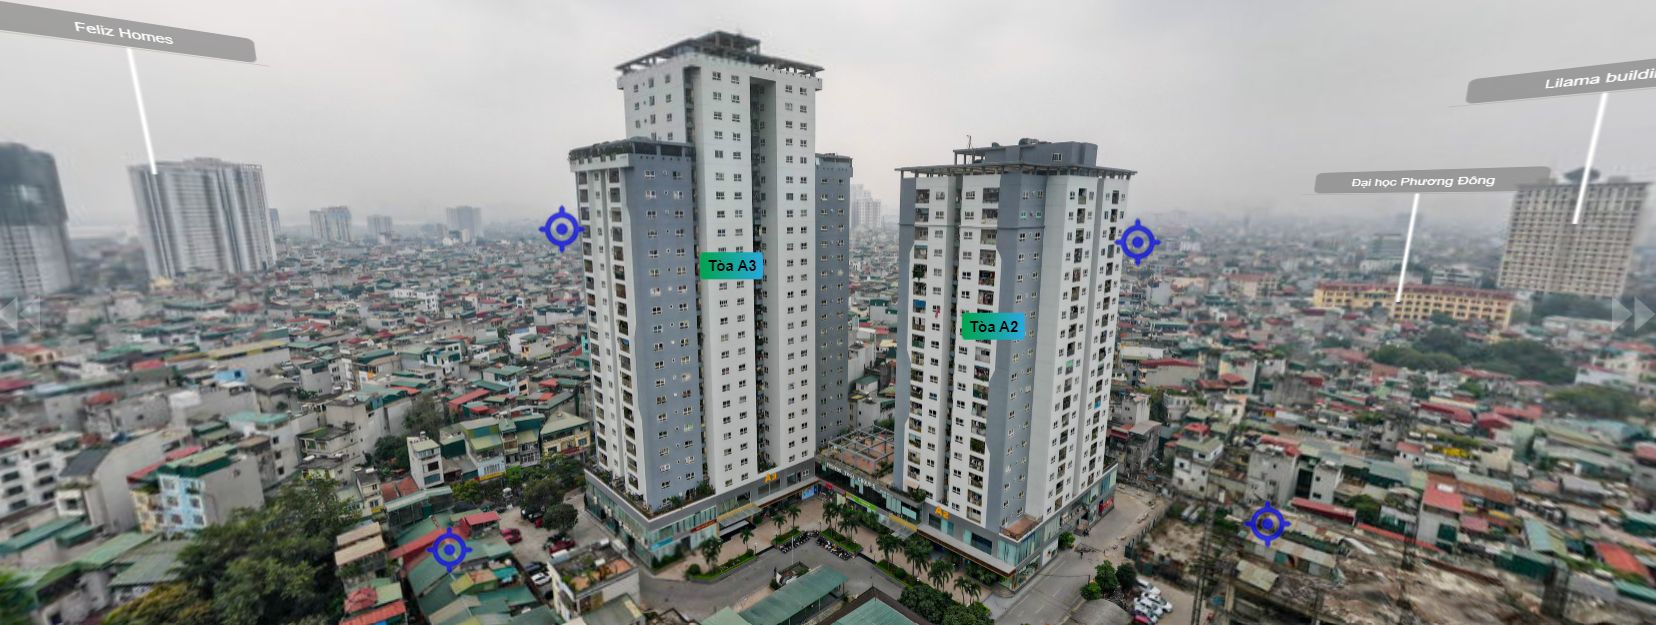 So sánh căn hộ 3PN chung cư 536A Minh Khai và chung cư Thăng Long Garden